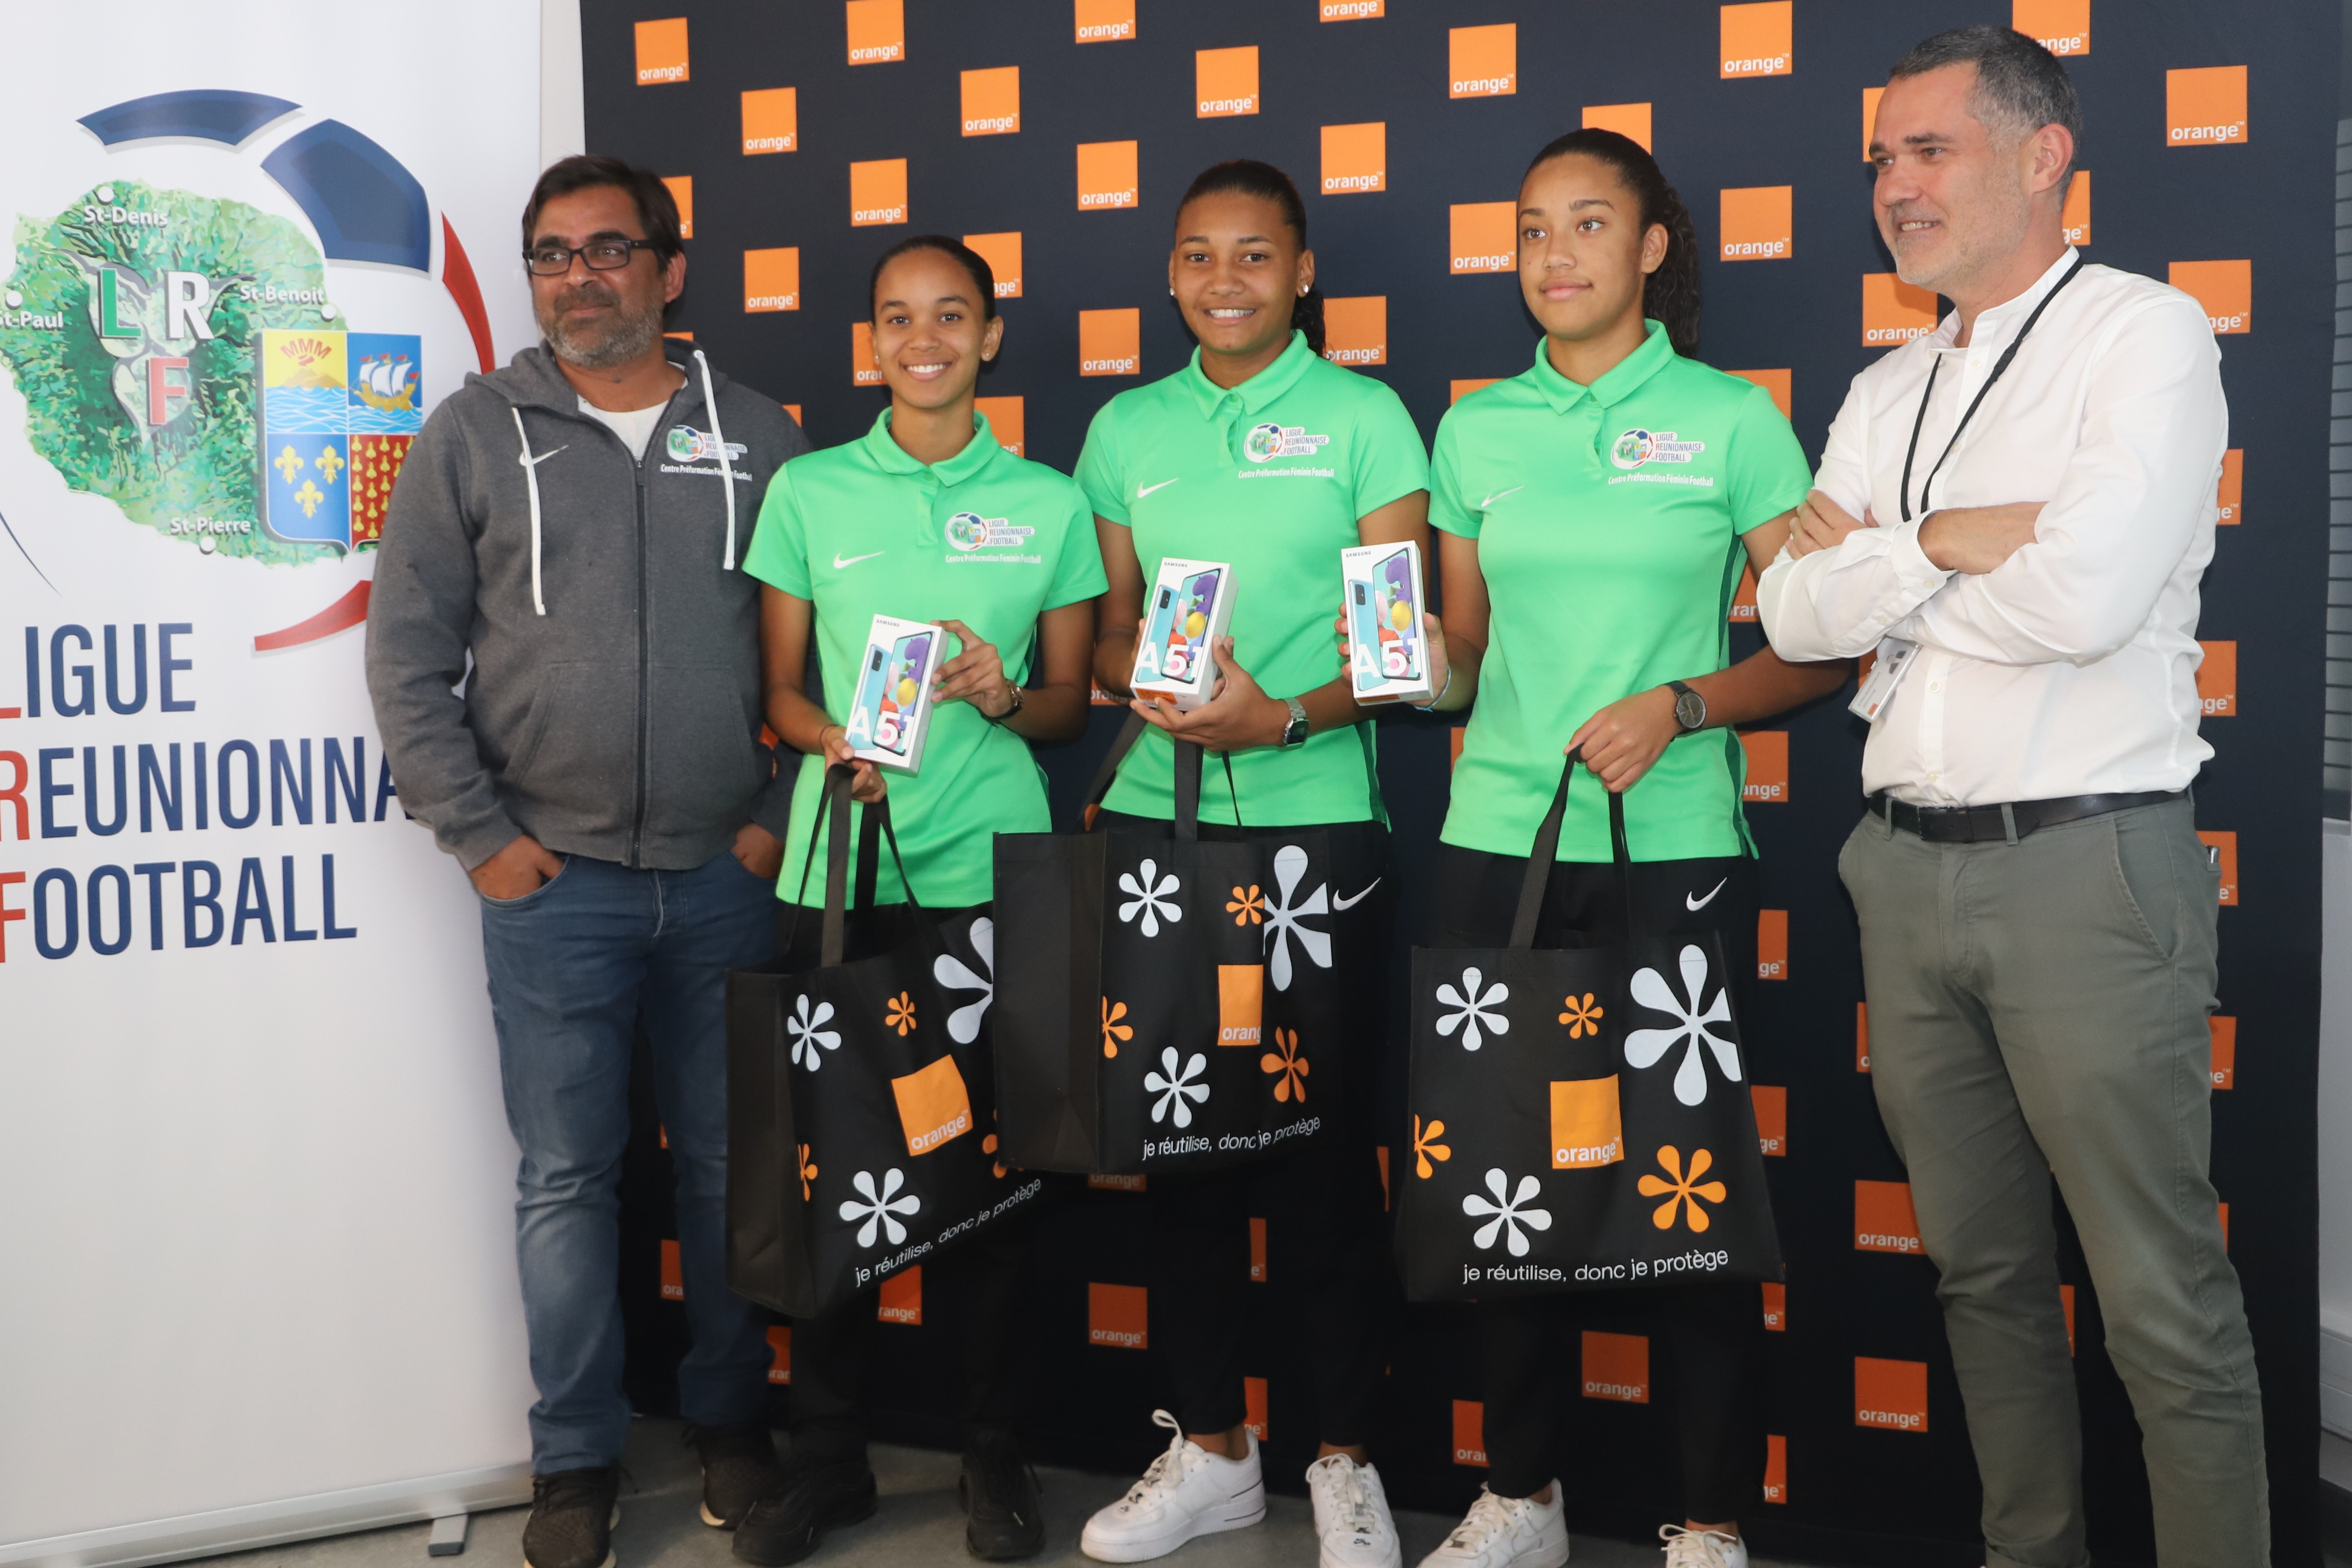 Orange s’engage auprès de la ligue Réunionnaise de football en faveur du Football Féminin à la Réunion